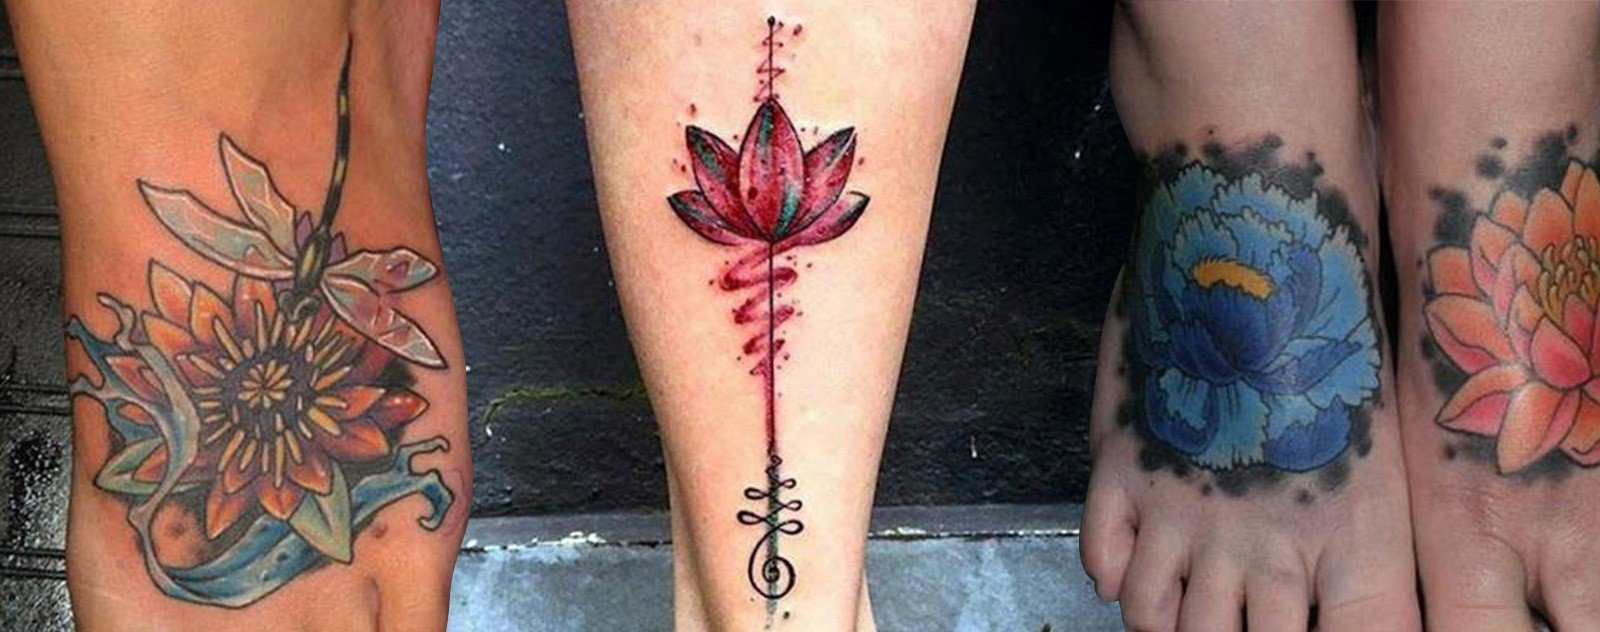 recentrer sur soi tatouage fleure de lotus  femme